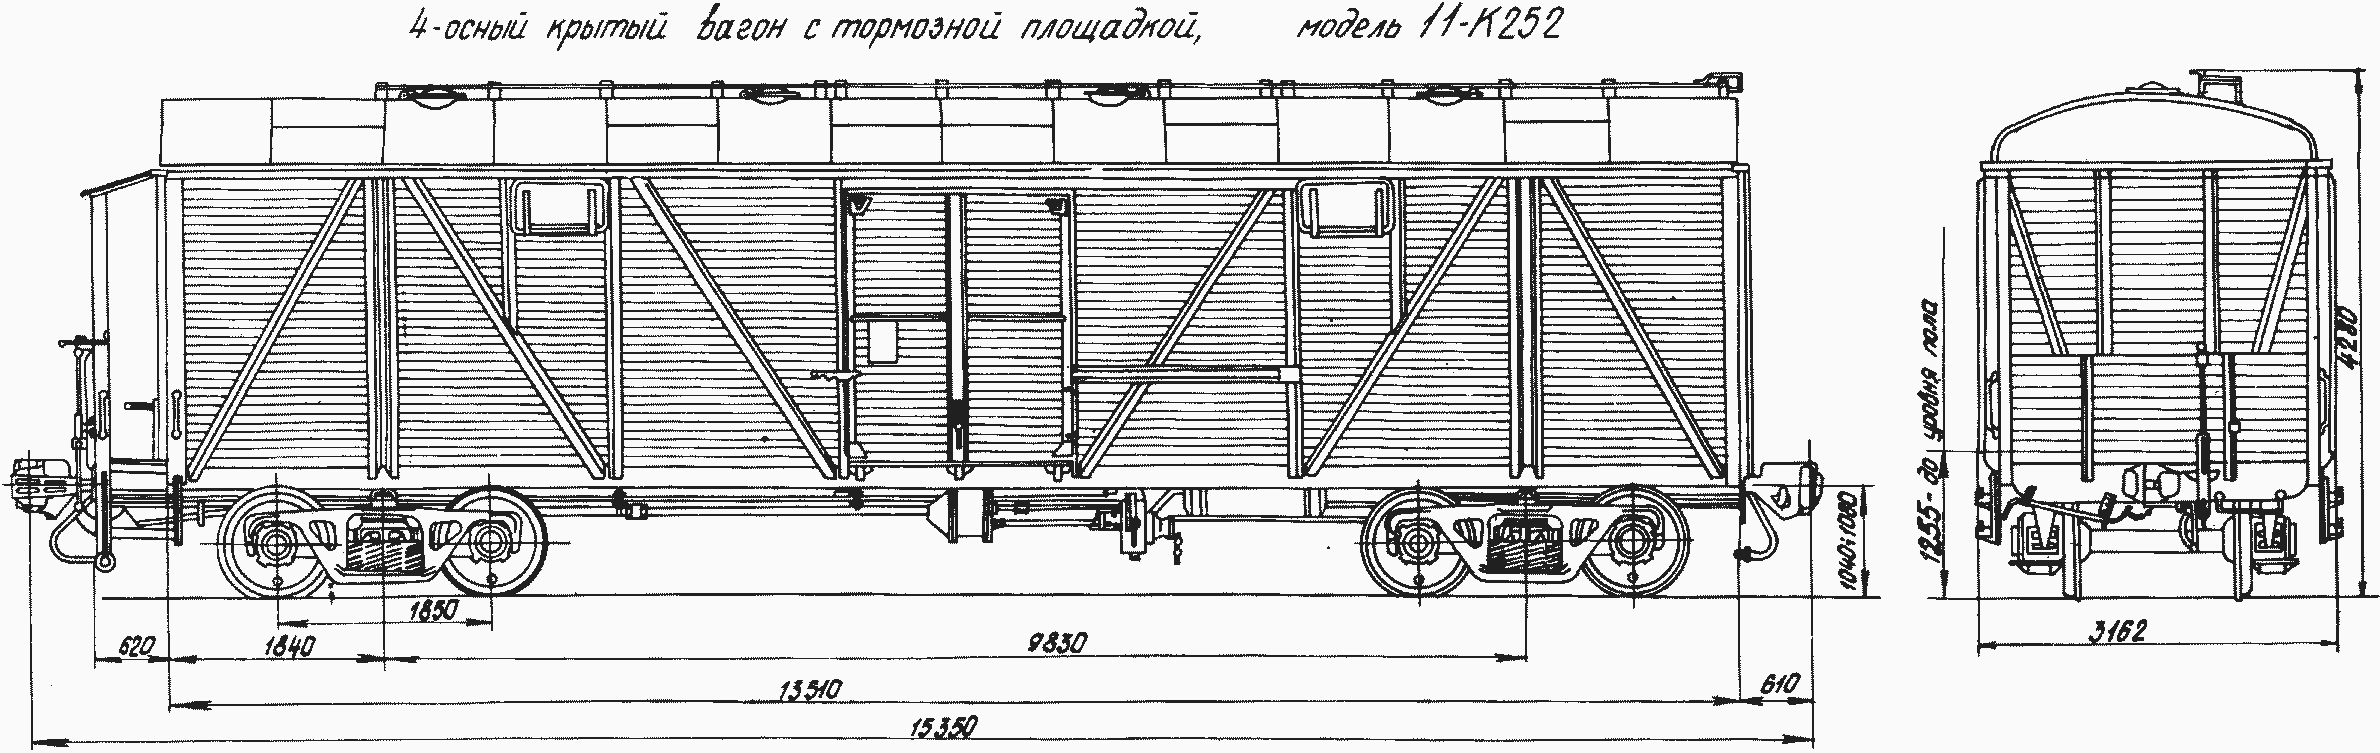 Крытый вагон 11-270 с переходной площадки вагона